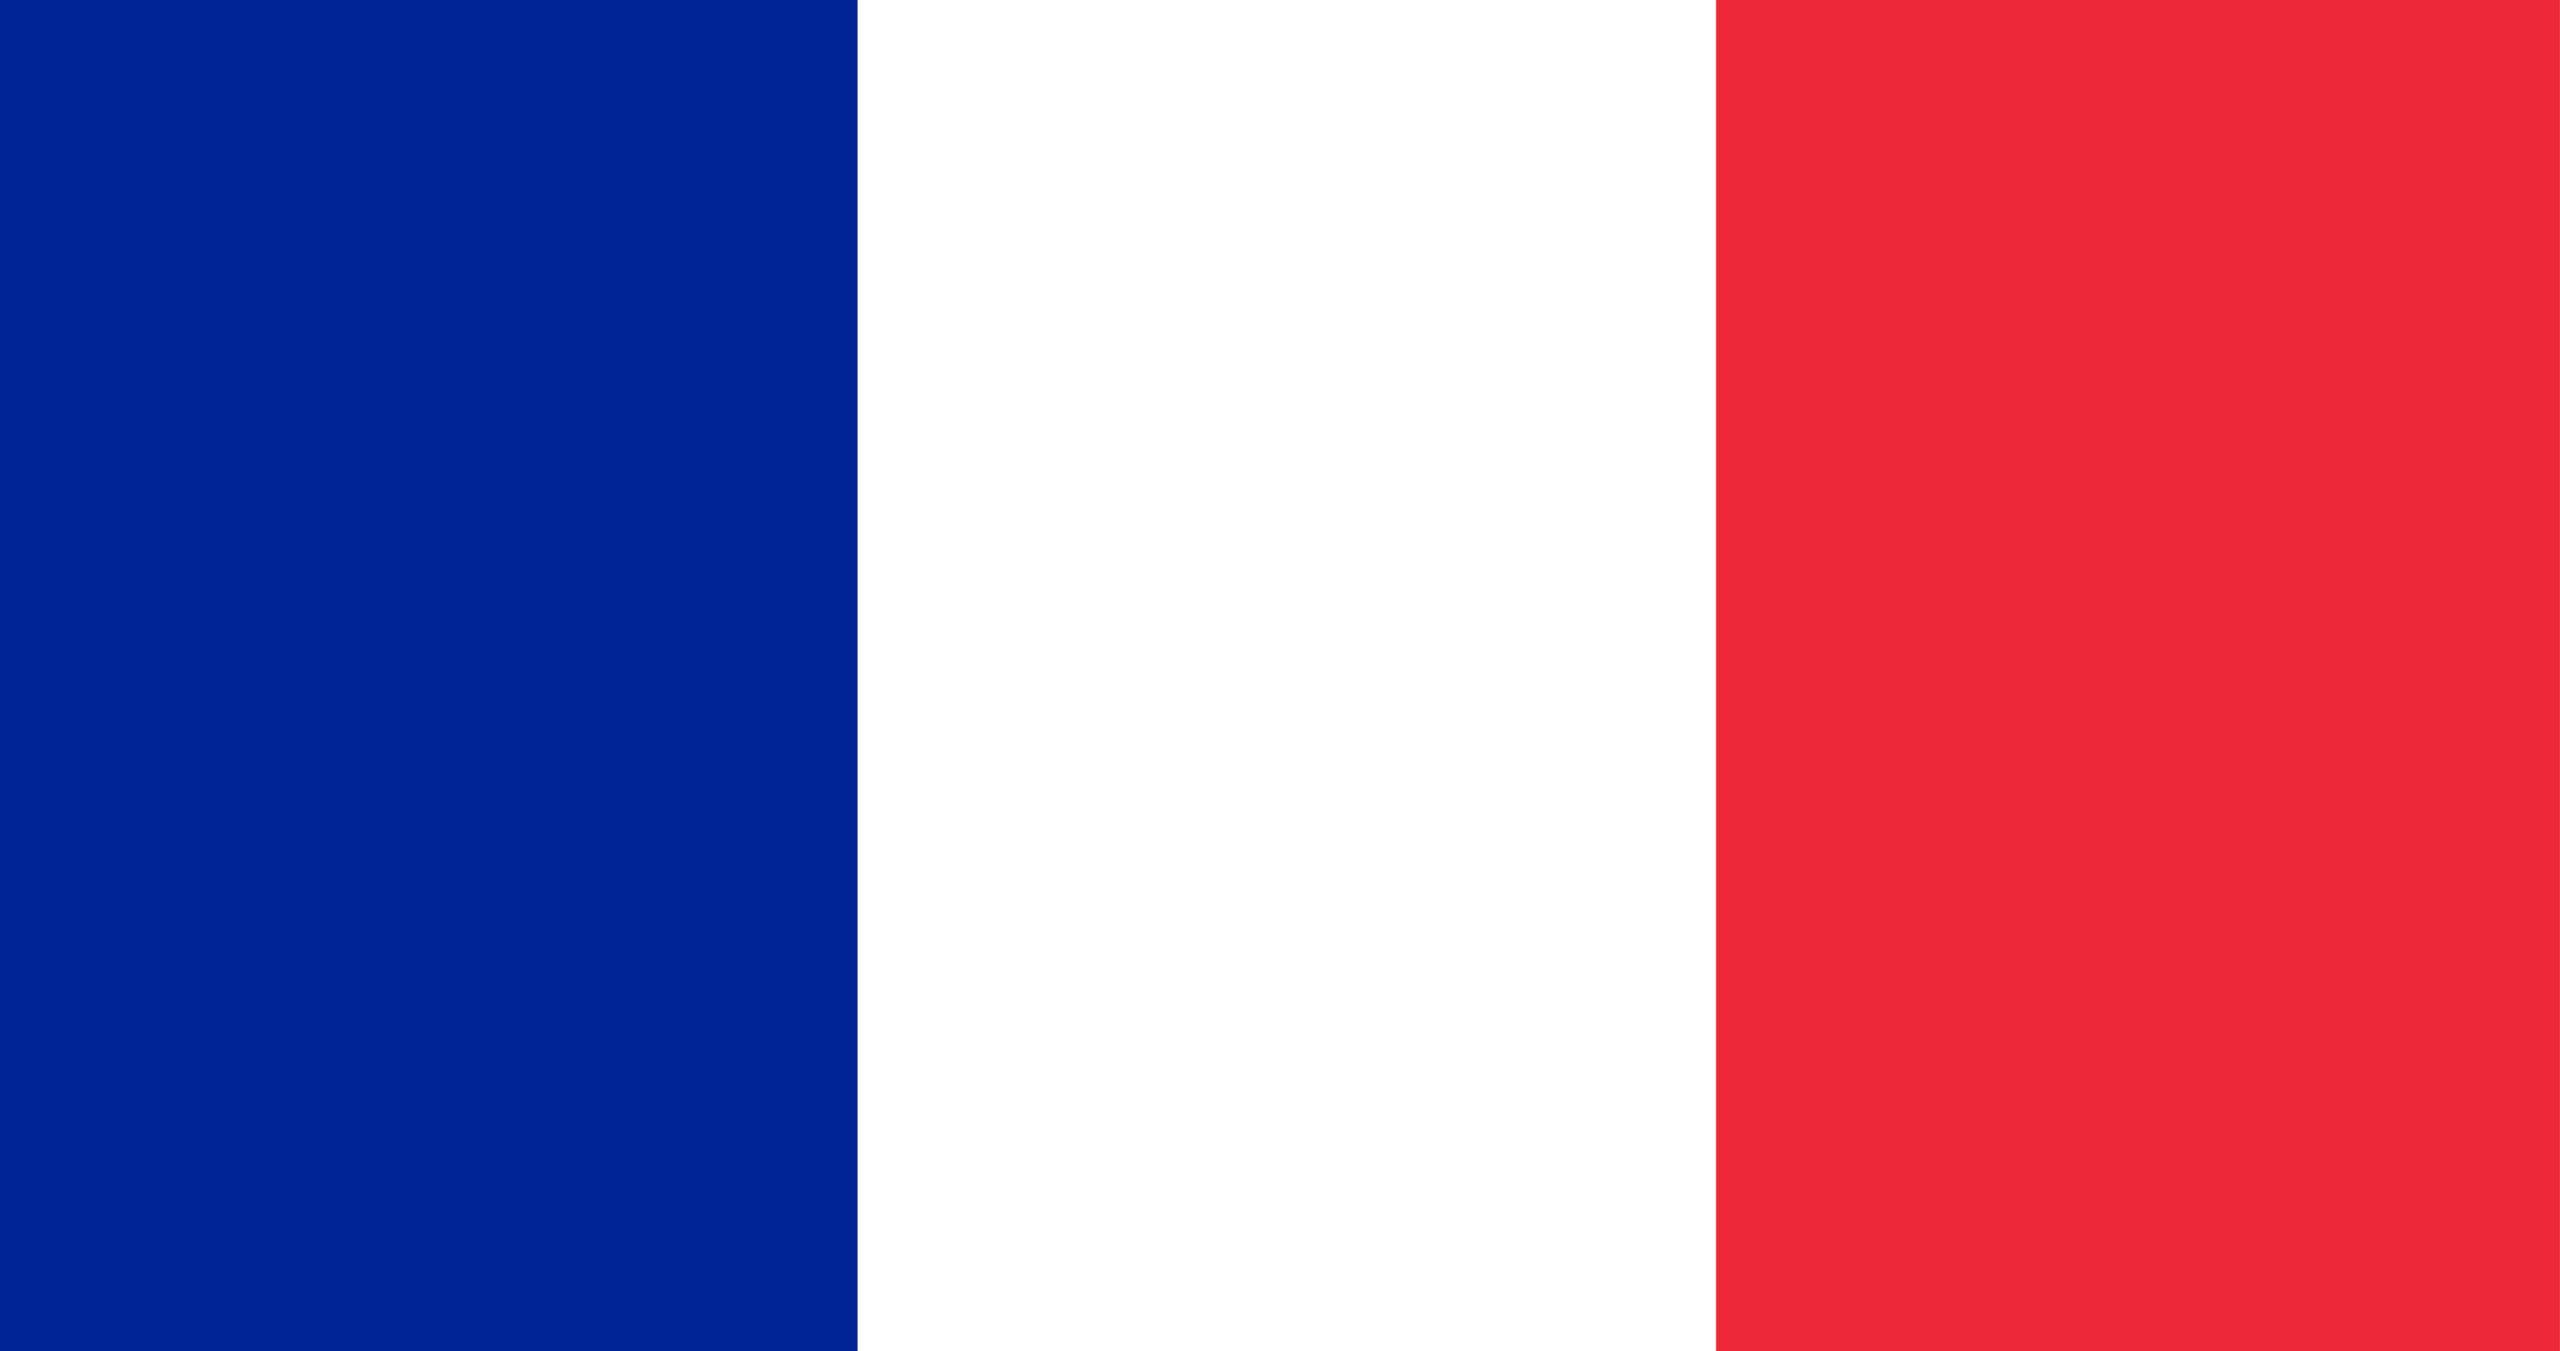 Illustration of France flag